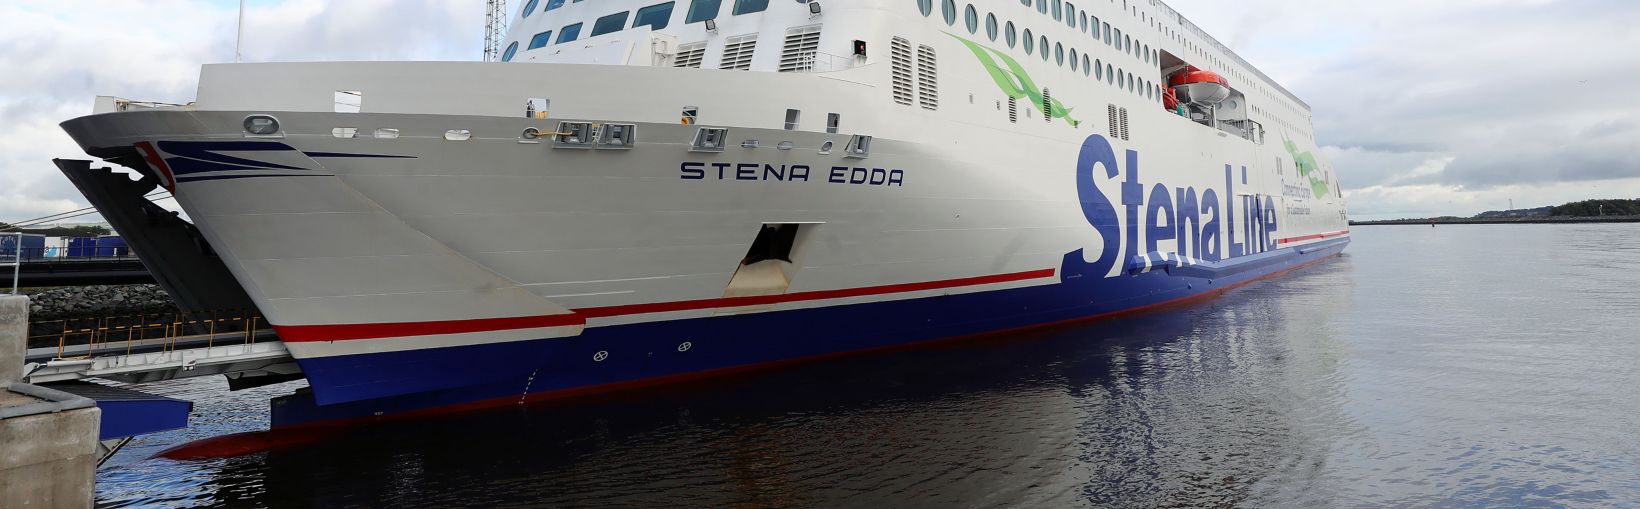 Ferry Stena Edda atracado en el puerto de Belfast